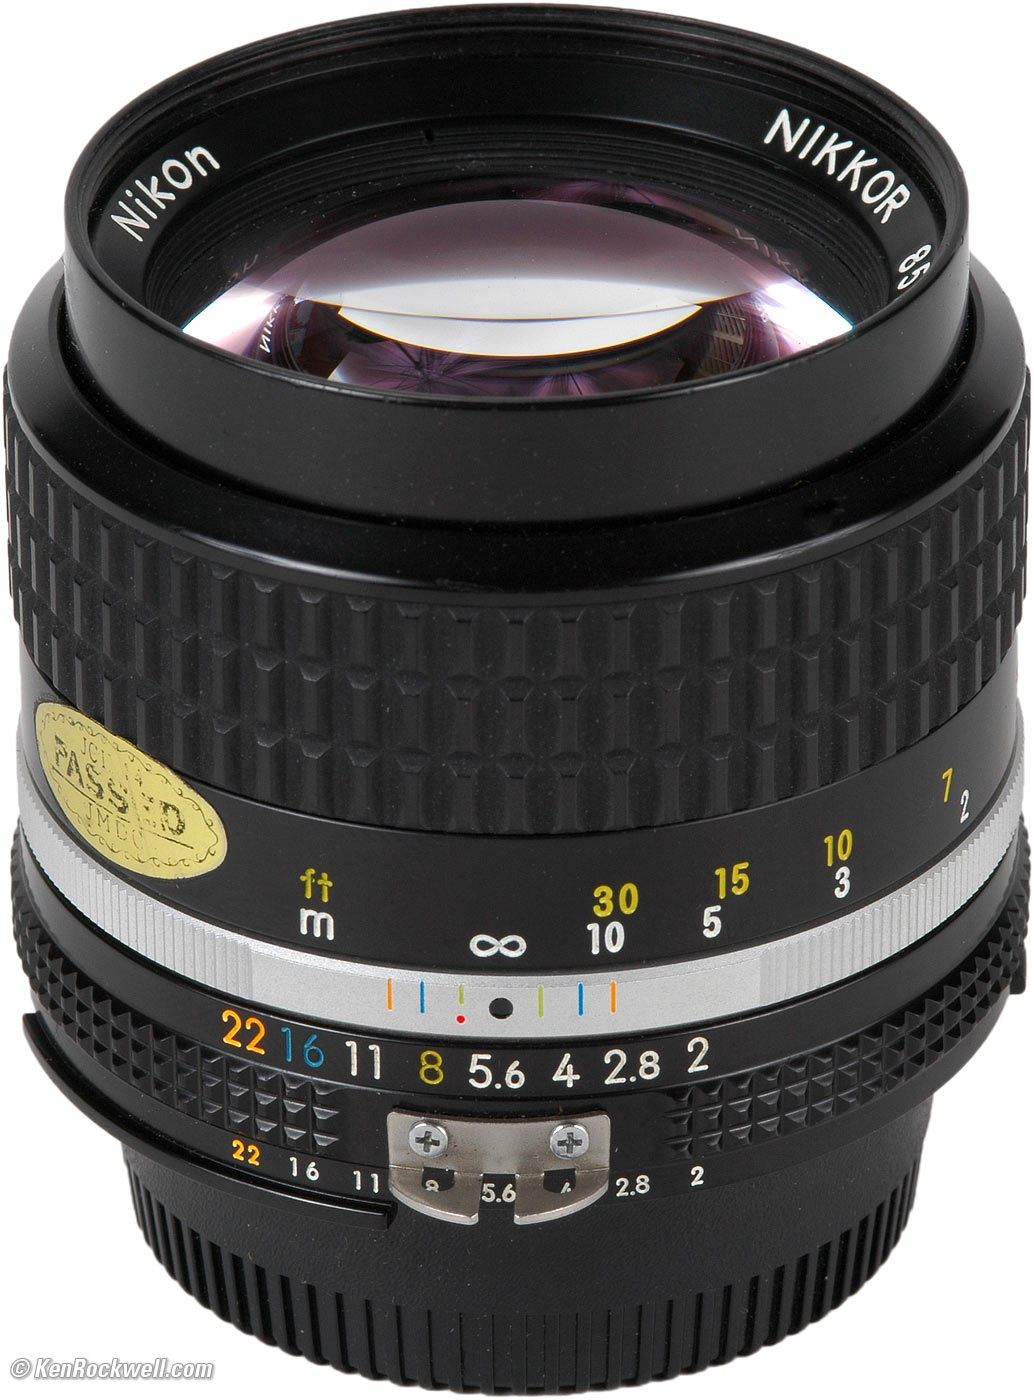 Nikon 85mm f/2 Review